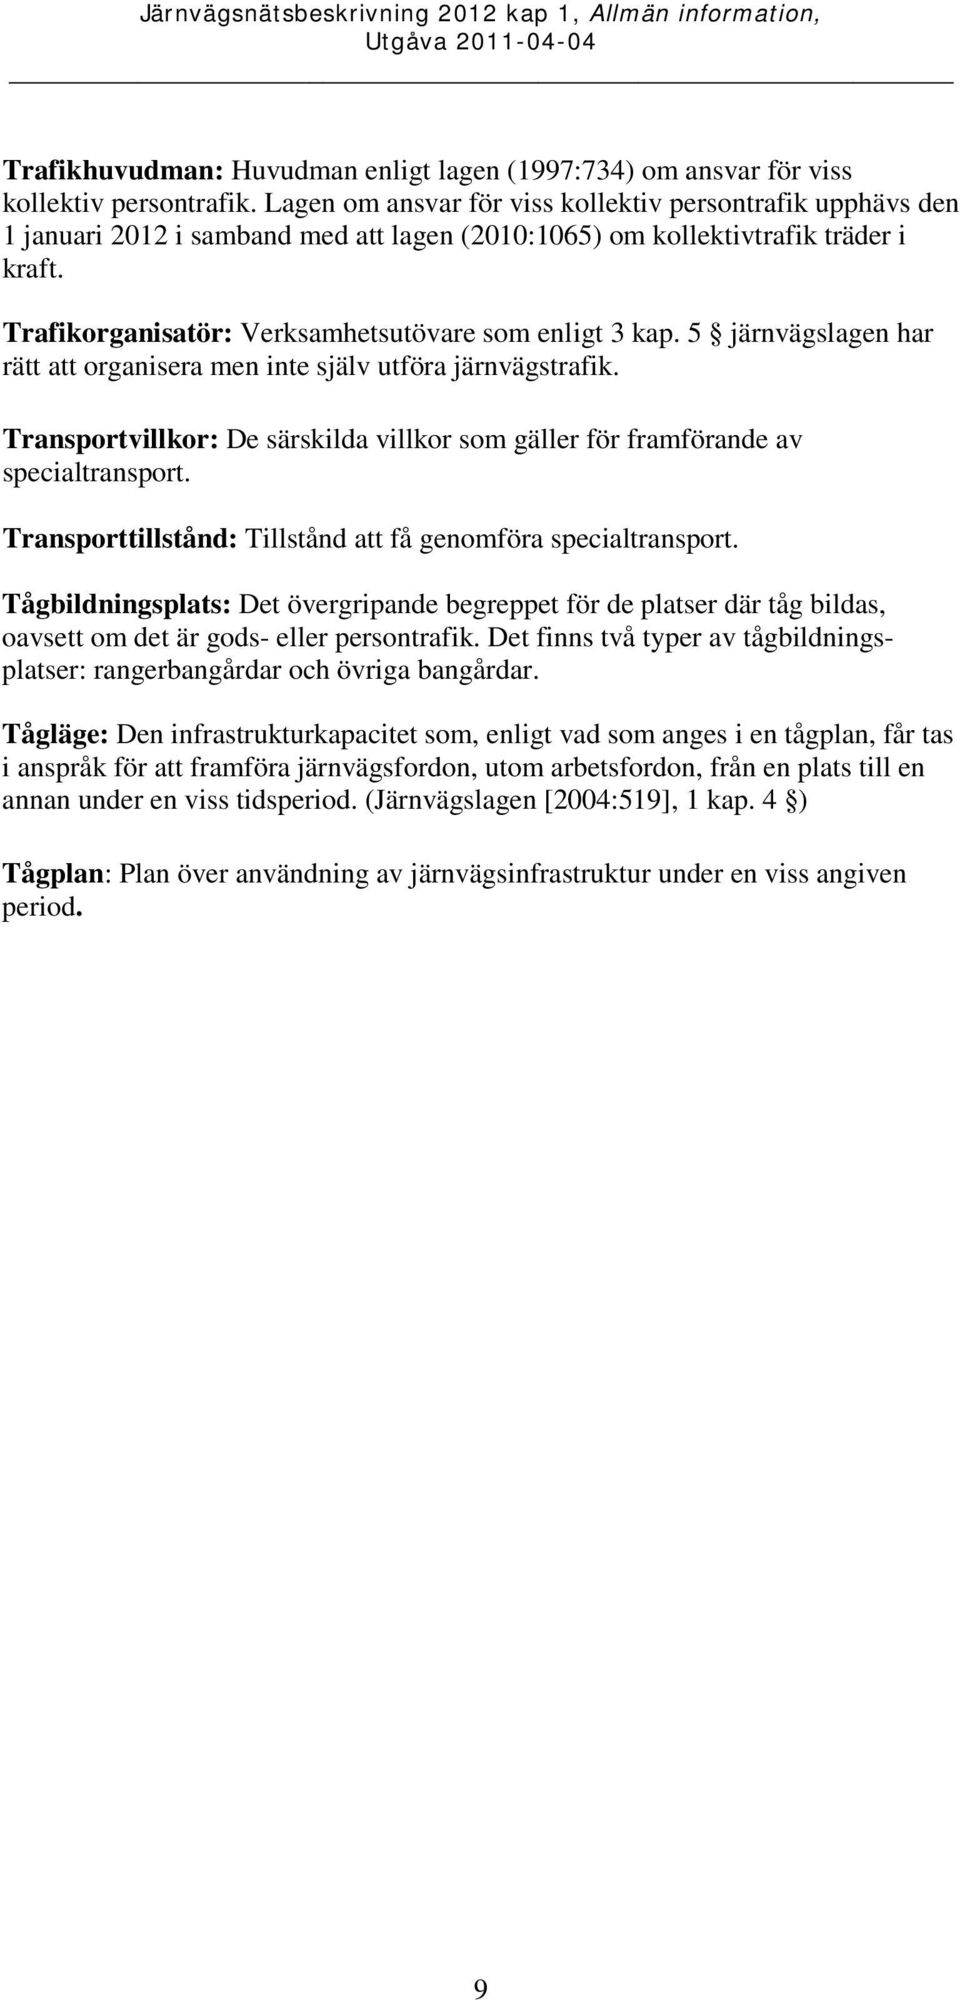 Trafikorganisatör: Verksamhetsutövare som enligt 3 kap. 5 järnvägslagen har rätt att organisera men inte själv utföra järnvägstrafik.